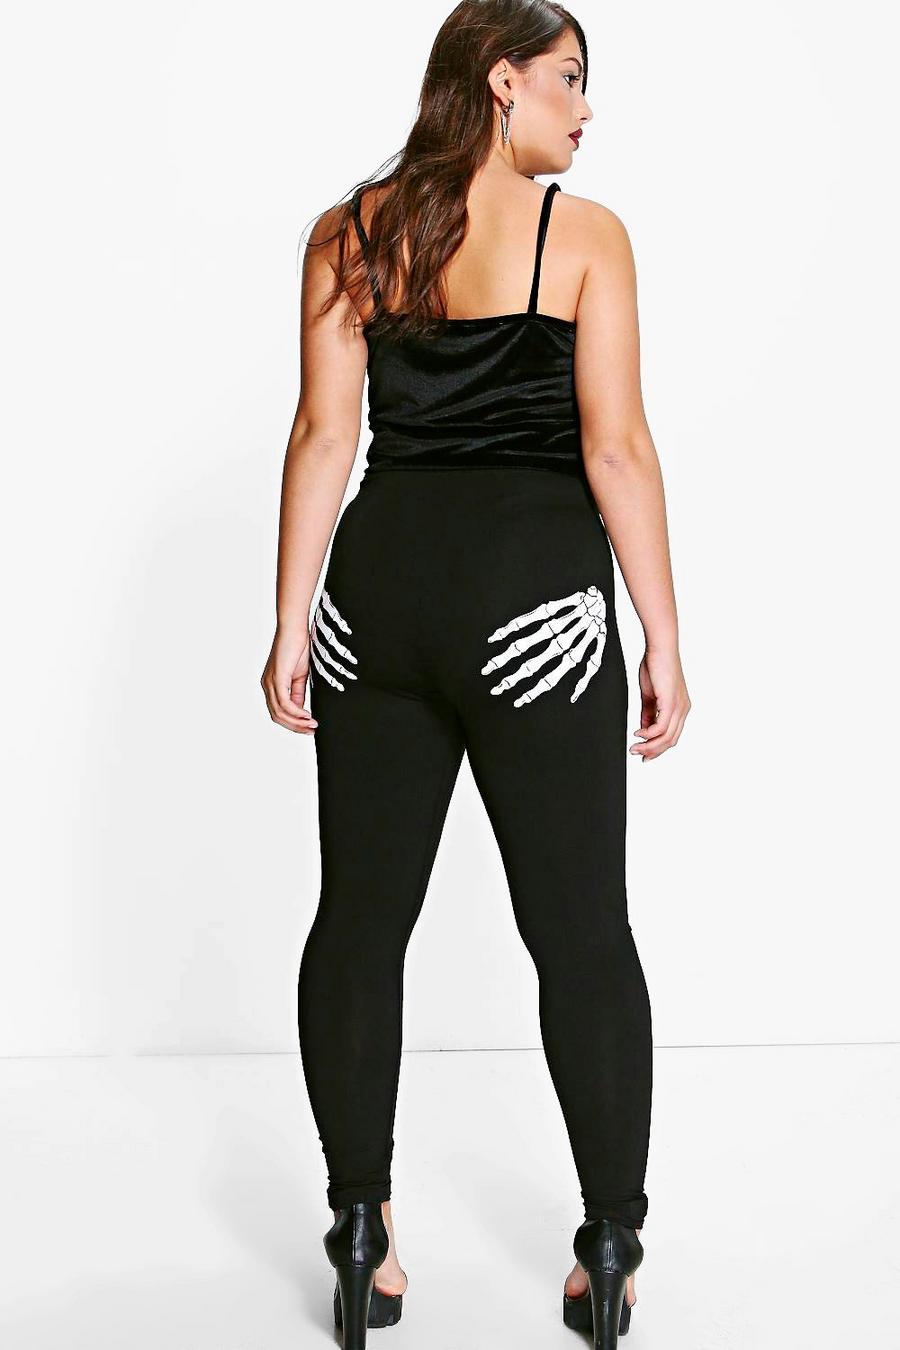 Black Plus Skeleton Hands Printed Halloween Leggings image number 1